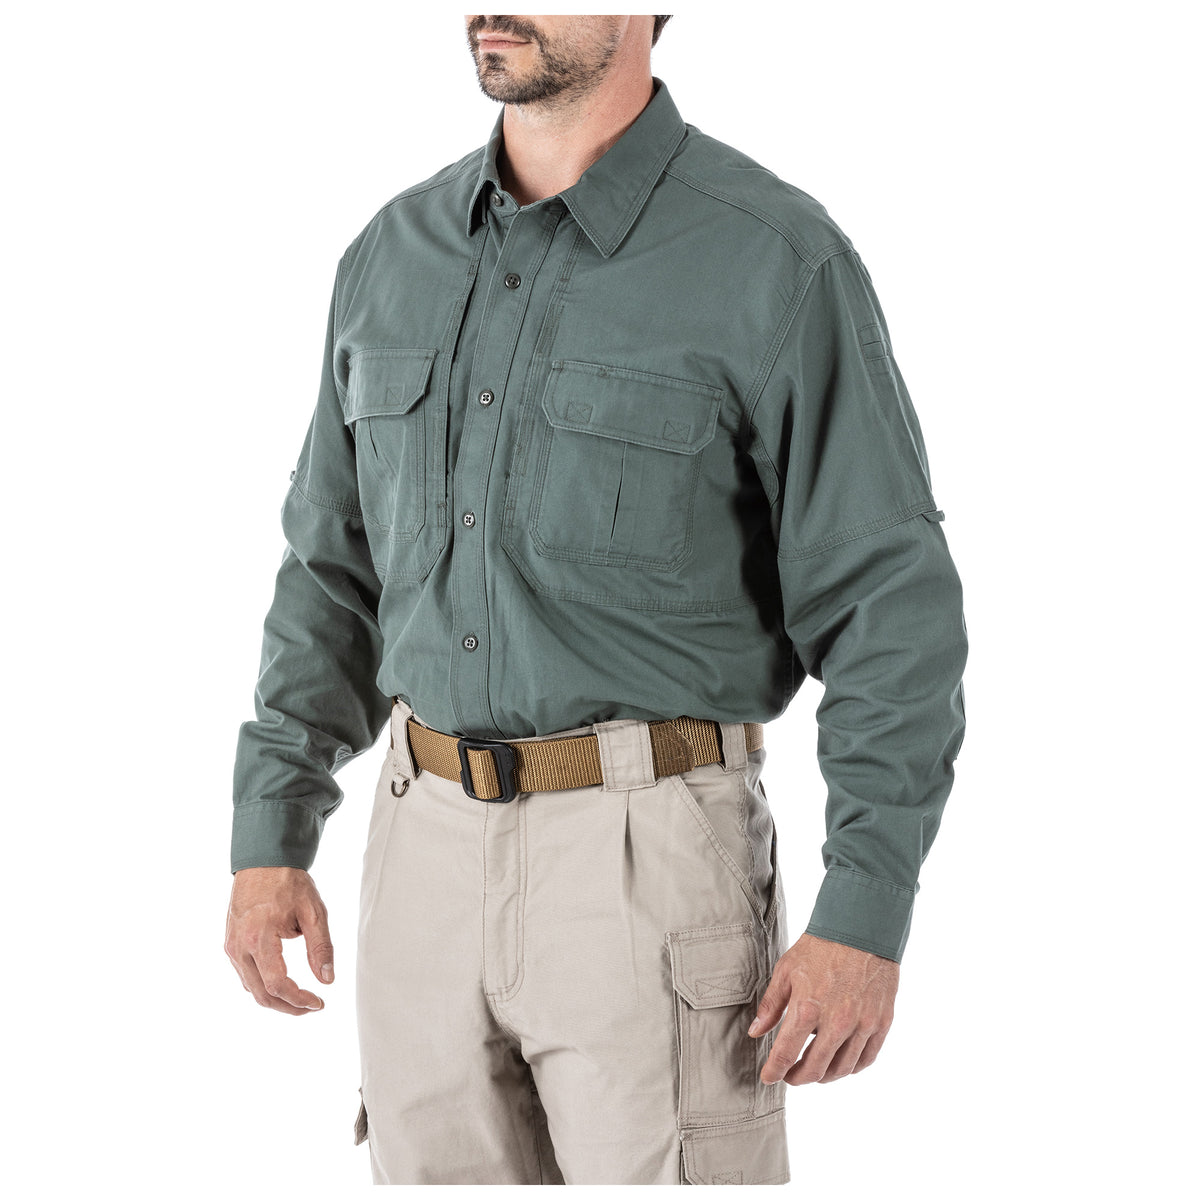 5.11 Tactical® Long Sleeve Shirt – 5.11 Tactical Japan